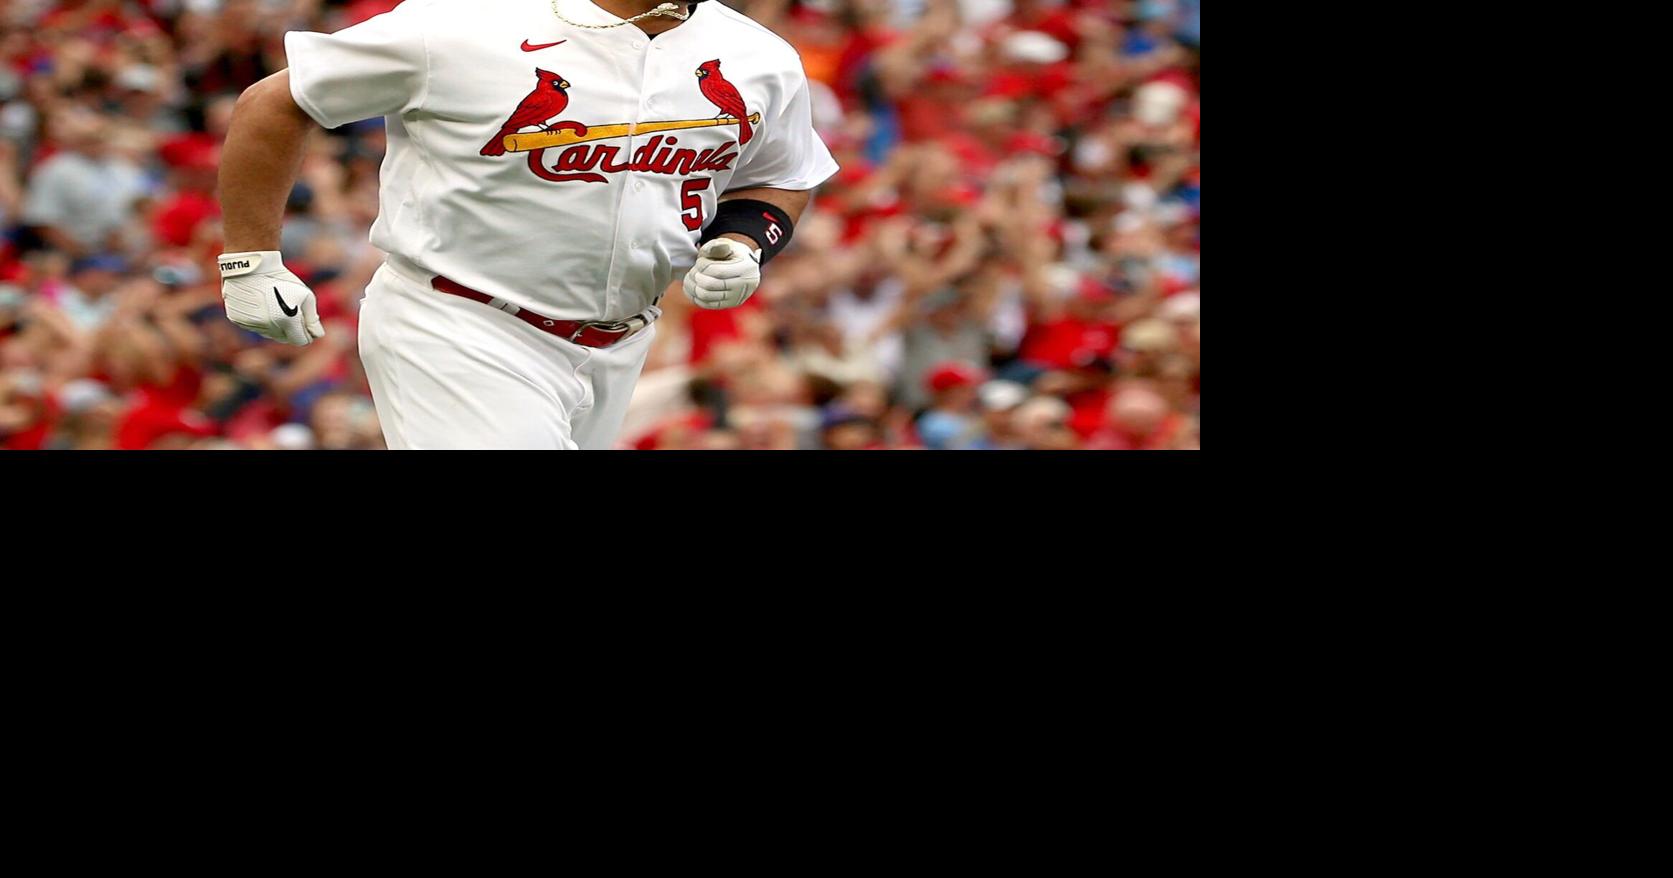 Paul Goldschmidt - St. Louis Cardinals First Baseman - ESPN